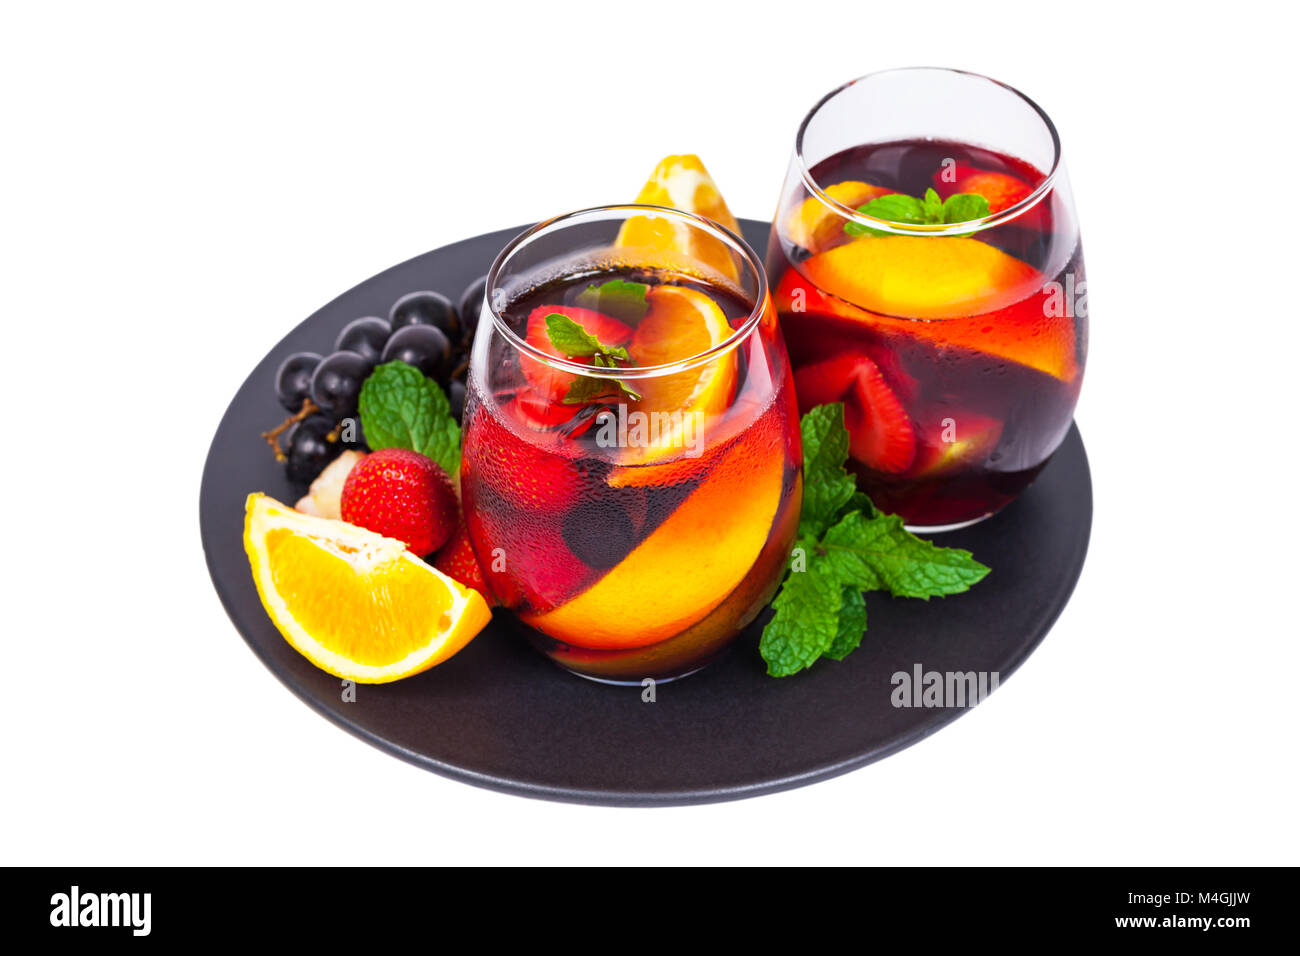 https://c8.alamy.com/comp/M4GJJW/summer-red-wine-sangria-drink-isolated-on-white-background-M4GJJW.jpg